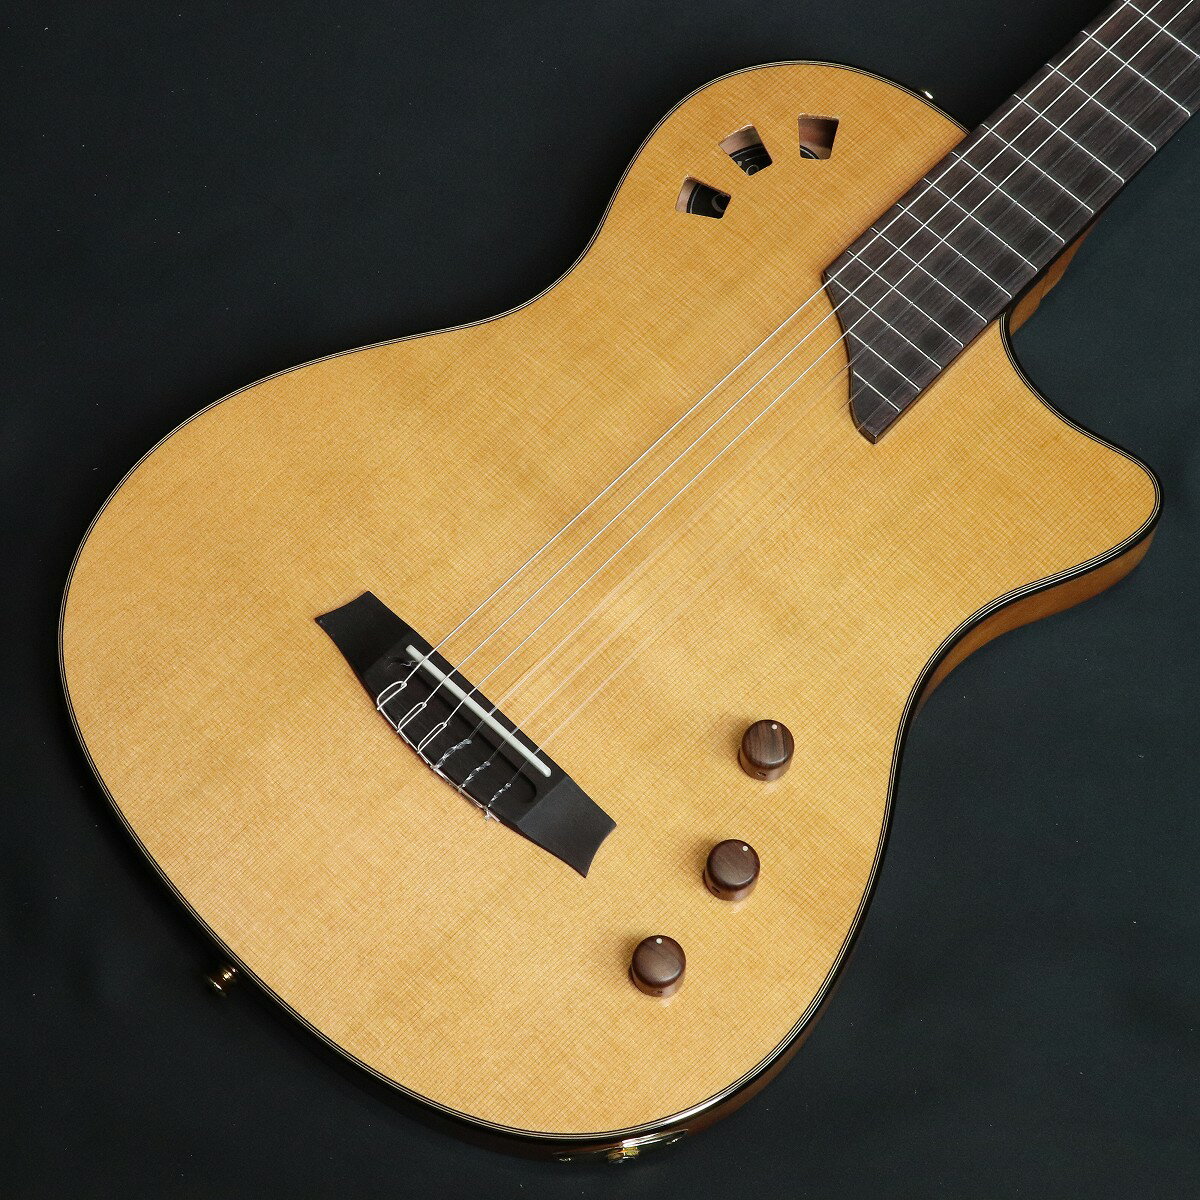 人気のStageギターにシダートップ、52mmナット、12フレットジョイント仕様が登場！ Stage Traditionalは、スペインの伝統的なギターのデザイン要素を取り入れた仕様です。温かみのあるトーンとレゾナンスでクラシックギターの定番であるソリッド・カナディアン・シダー・トップを採用、52mmのナット幅、そしてフラットなローズウッド（もしくはパーフェロー）指板など、クラシック、フラメンコ、スパニッシュ・ギターのバックグラウンドを持つプレイヤーに親しみやすく、また快適な演奏フィーリングを提供できる仕様となっています。また12フレットジョイントであること、心地よいCシェイプのネックを持つステージ・トラディショナルは、チェンバード・マホガニー・ボディと組み合わせることで、クラシックなスパニッシュ・ギターのデザインを体現しているといえます。 ギターの心臓部には評価の高いFishman製”Stage Pickup System”が搭載されており、演奏途中でも簡単にアクセスできるコントロールVolume、EQ、Body BlendノブもStageが人気のポイント。このシステムにより、プレイヤーは好みのアコースティック・トーンを調整することができます。 モダンでステージ映えするエレガットでありながら、生音もそこそこボリュームが有り、驚くほど良好なレゾナンスと、レスポンスの良いナイロン弦のトーンを得ることができます。 また外出の際にも重宝するギグバッグ（リサイクル・ナイロン製）が付属します。 ■付属品：ギグバッグ、メーカー保証書 ■JANコード:0614252347211 ■シリアルナンバー:92330136 ※こちらの商品は店頭展示品の為、画像に写りにくい磨き傷などがある場合がございます。 付属品：ギグバッグ、メーカー保証書 製品仕様 TOPシダー単板BODYチェンバード・マホガニースケール650mmジョイント12フレットナット幅52mm指板パーフェローもしくはローズウッド（※生産ロットによる）指板Rフラットフレット数20BODY厚38mmピックアップFISHMAN STAGE PUシステム付属ケースSTAGE専用ギグバッグ